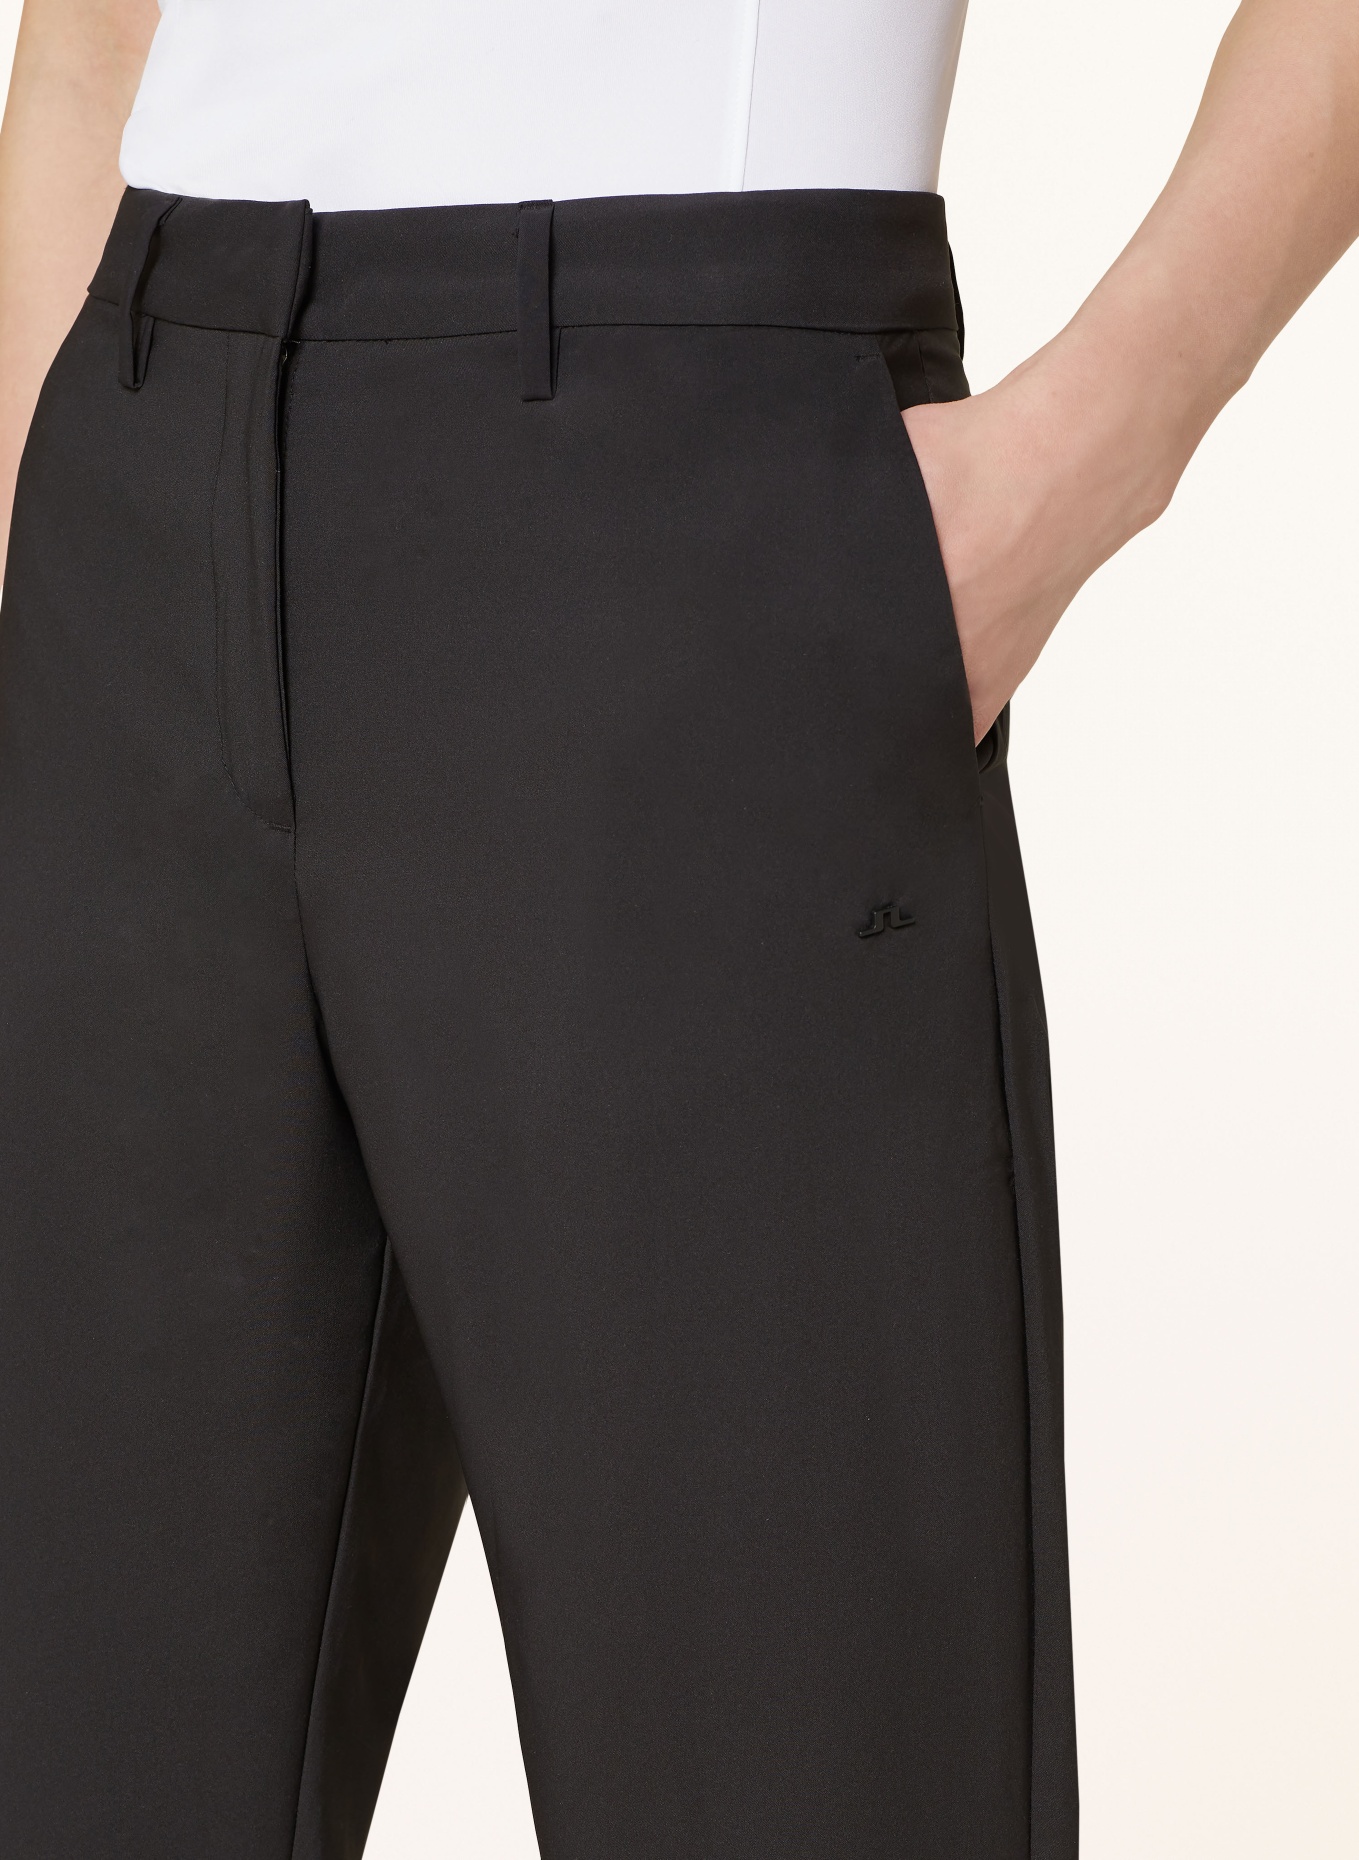 J.LINDEBERG Golf trousers, Color: BLACK (Image 5)